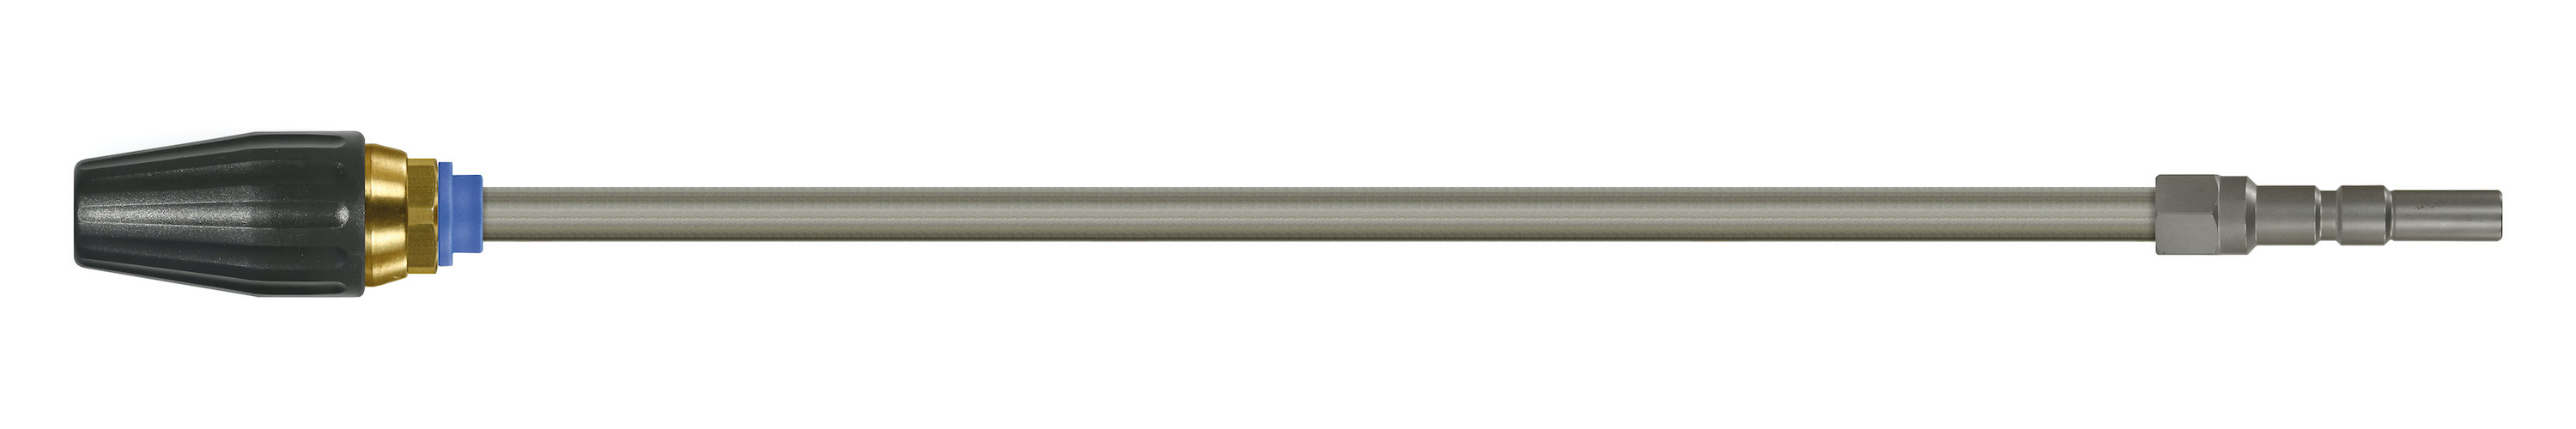 Coupleur KW. Lances tube zingué avec rotabuse ST-357.1. Cône 20°. 100 - 250 bar. Max. 100 °C, Calibre 035.